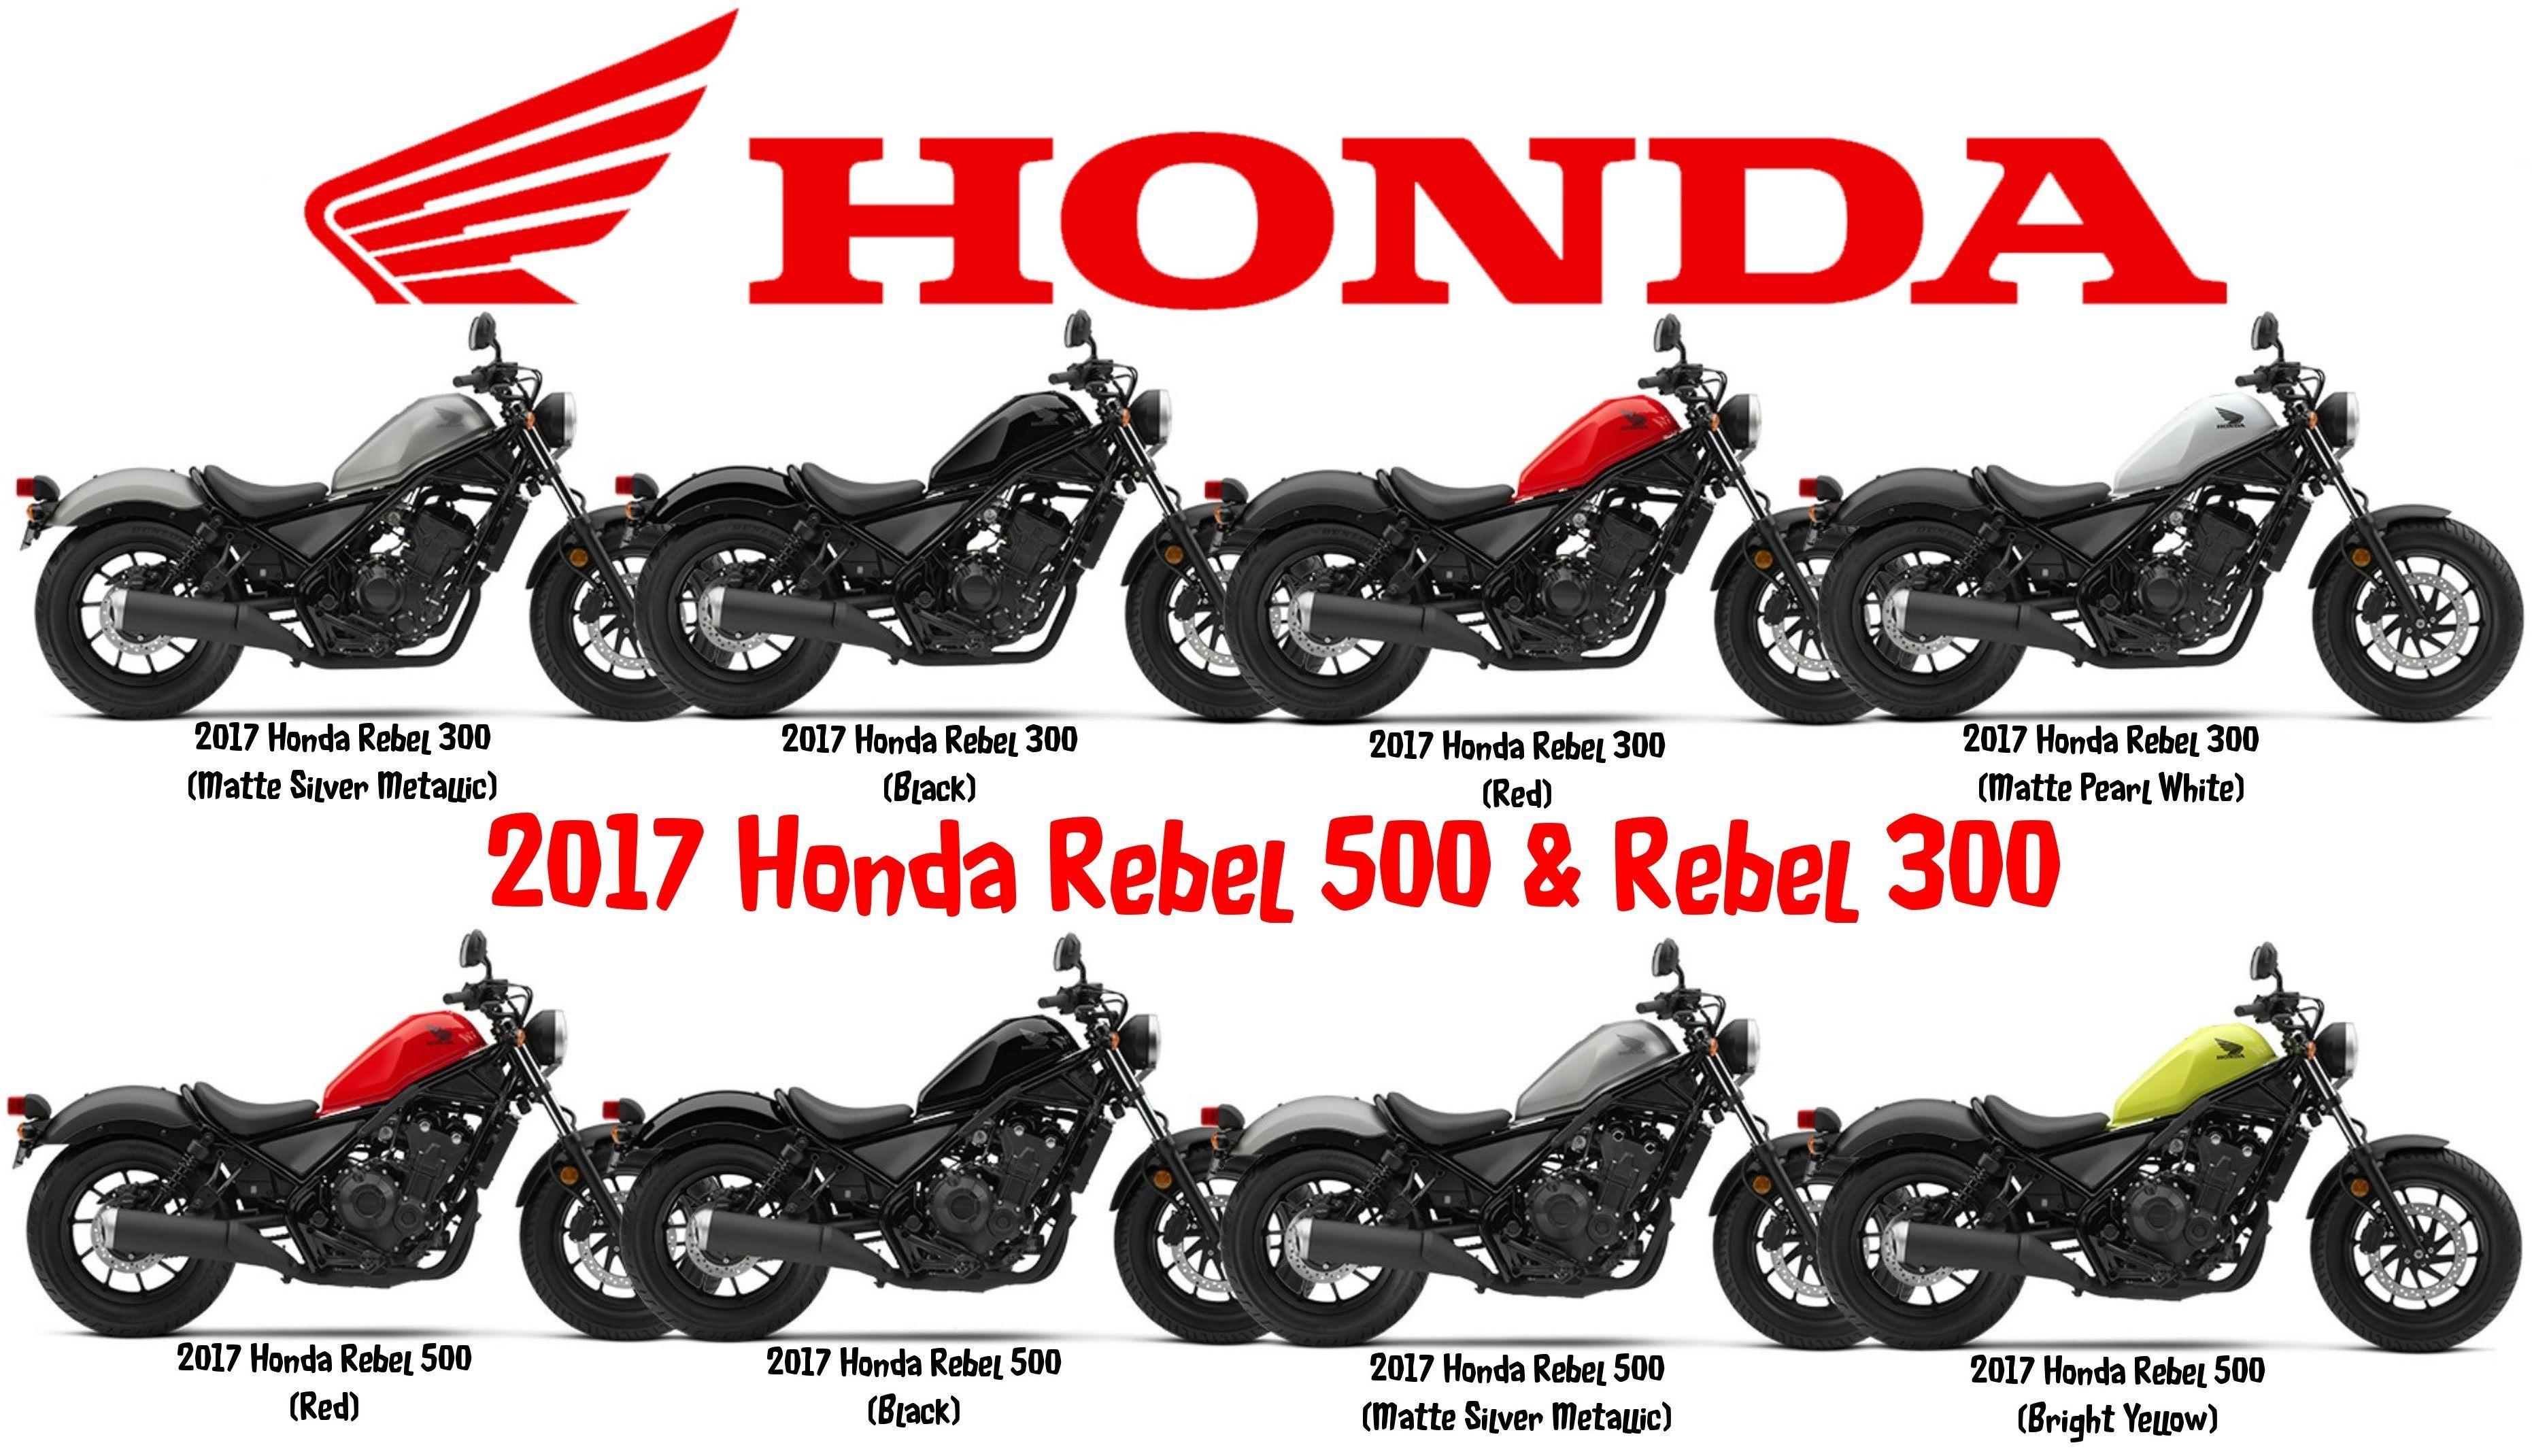 Honda Rebel 500 and Rebel 300